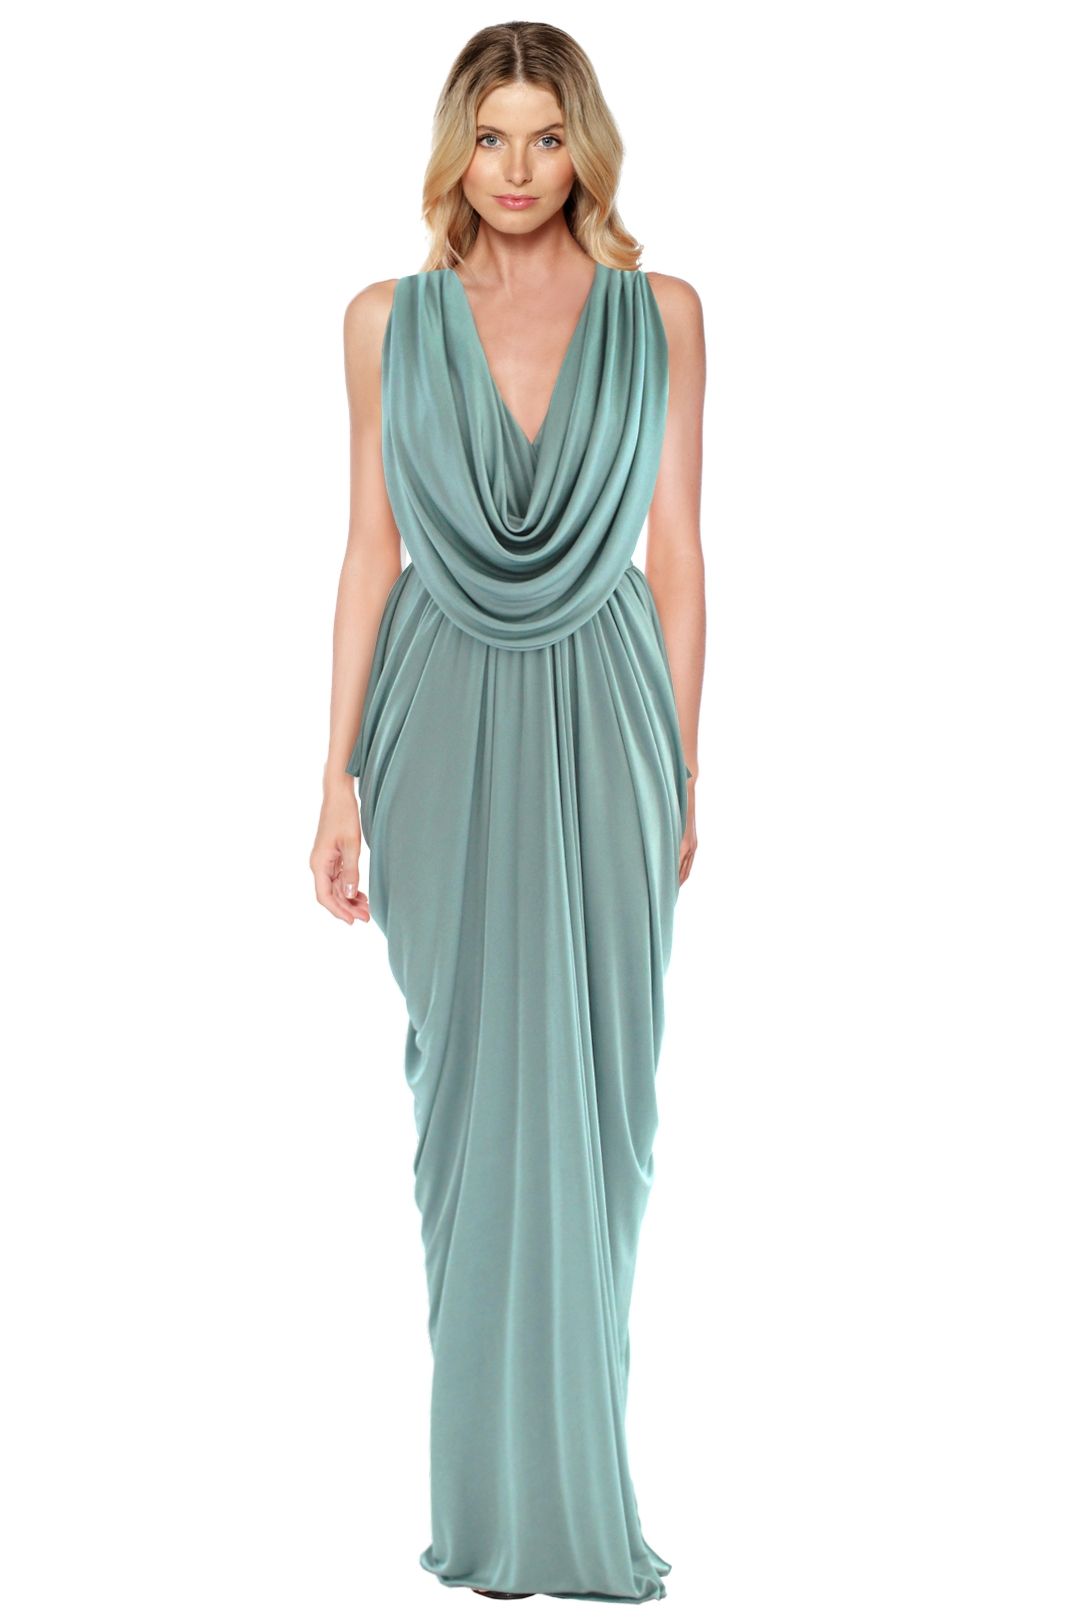 Grecian Evening Dress